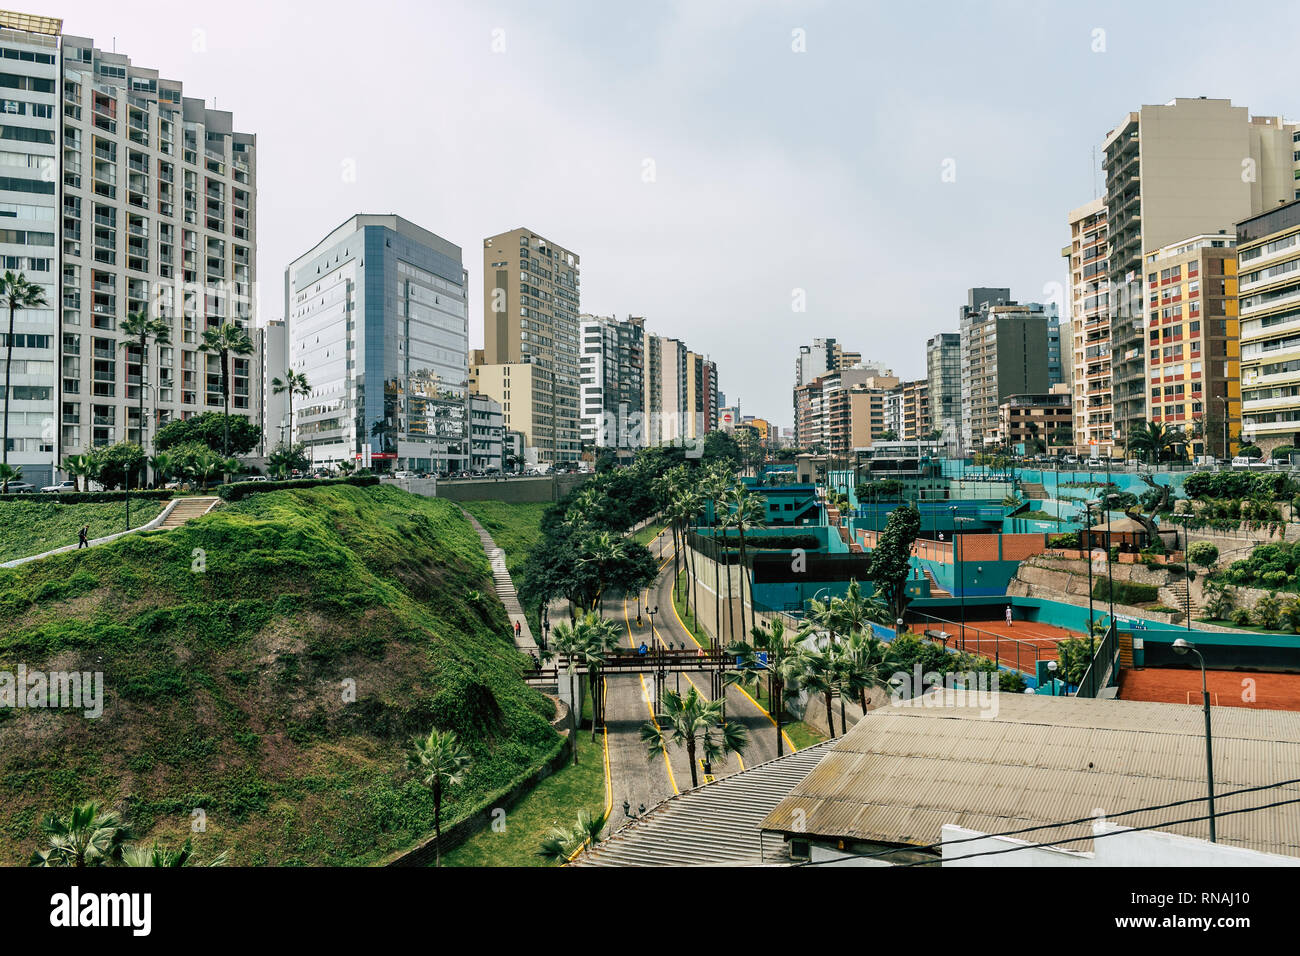 Cityscape in Miraflores district in Lima, Peru. Stock Photo